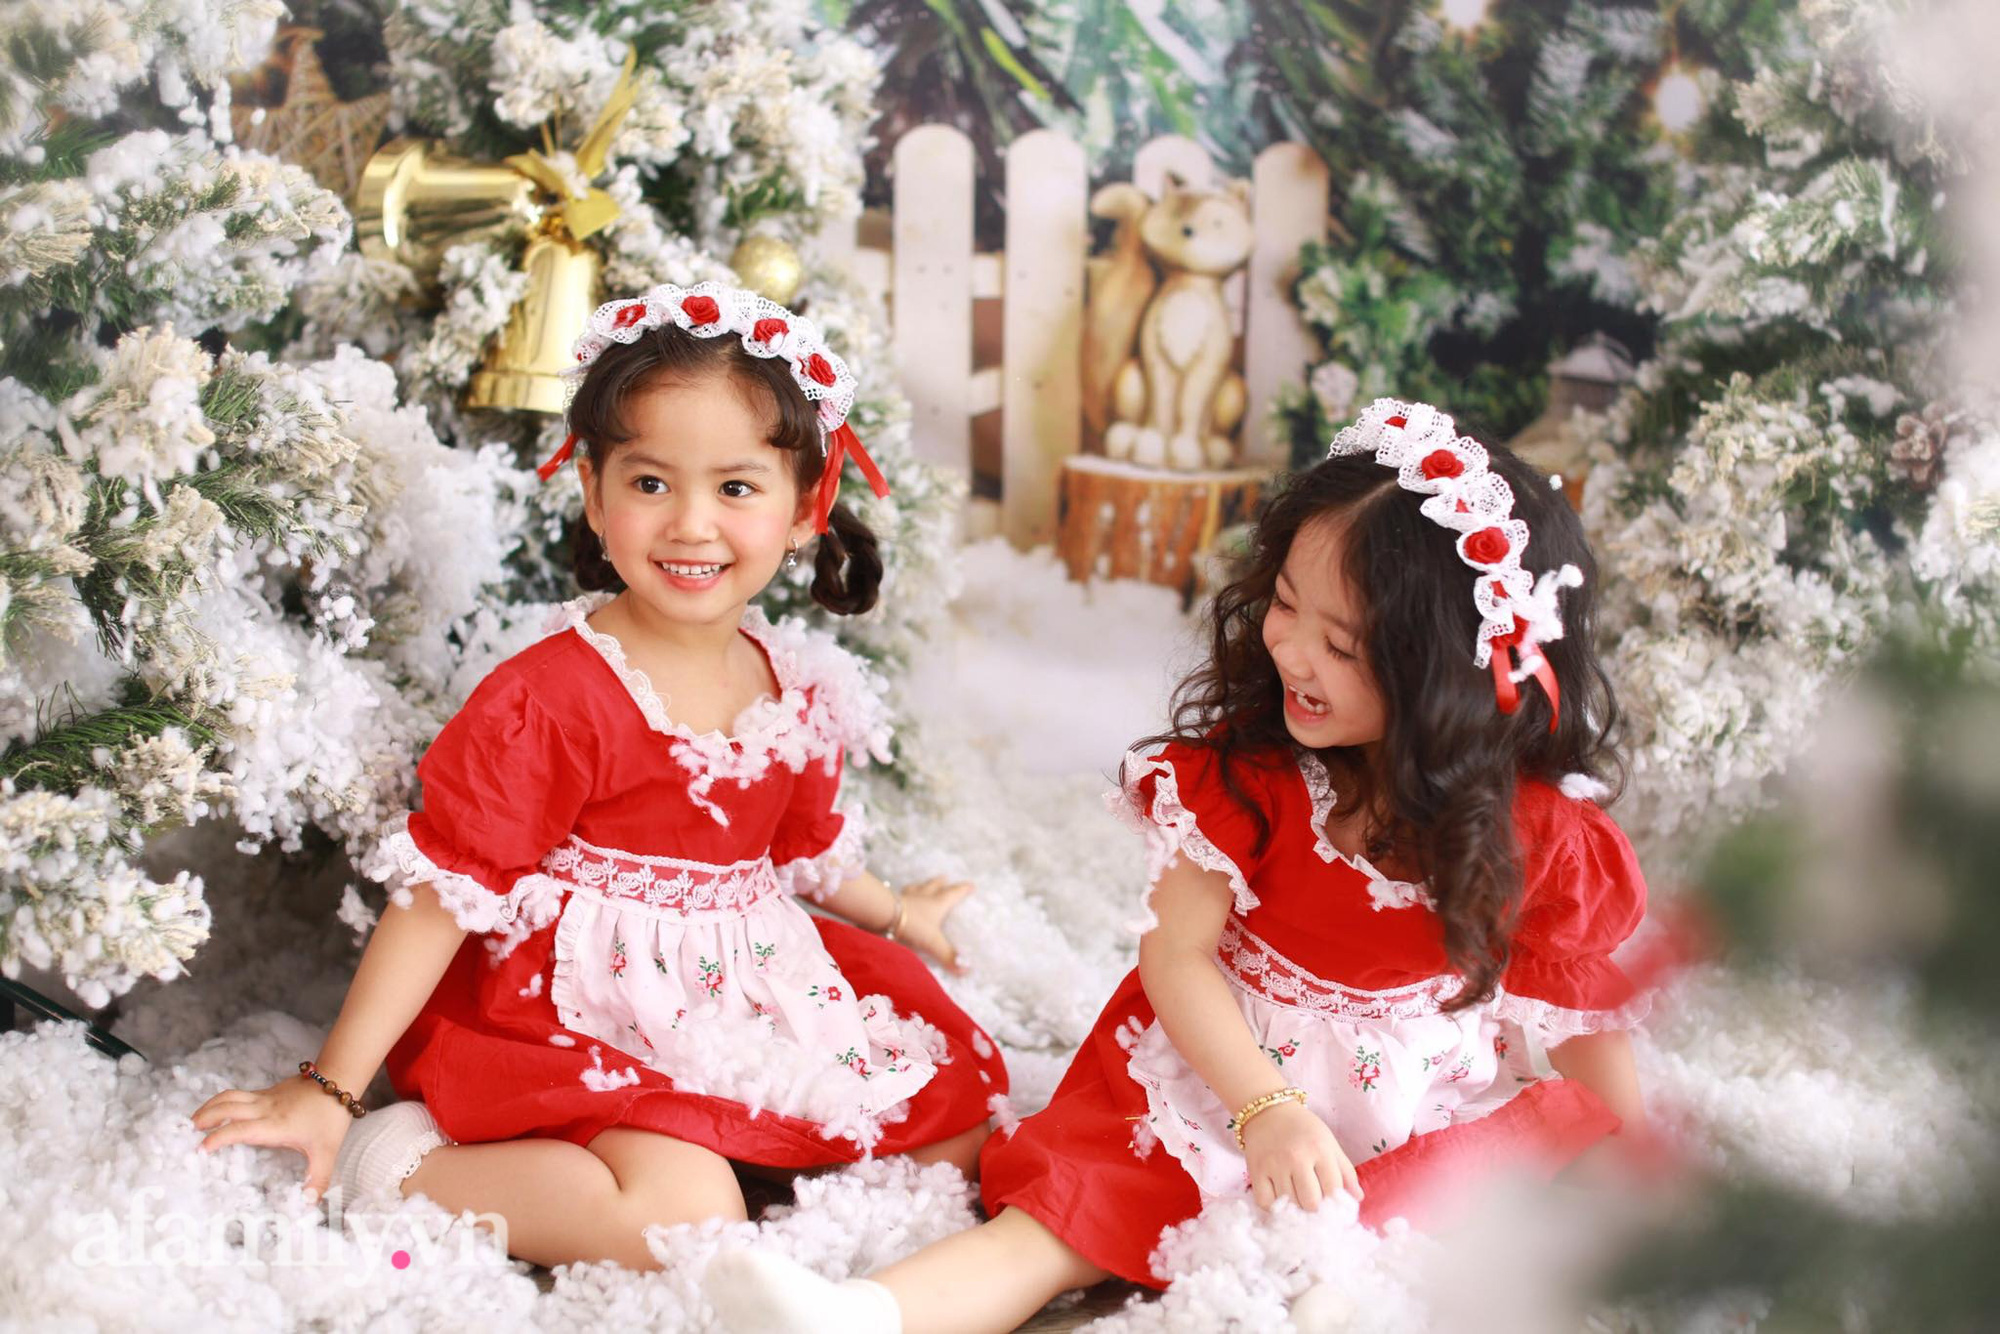 Mùa Noel đã đến và bộ ảnh chụp 2 bé gái của chúng ta là món quà ý nghĩa trong dịp này! Cùng xem họ lấp lánh trong những bộ đồ đầy phấn khích và sẵn sàng đón chào mùa giáng sinh nhé!